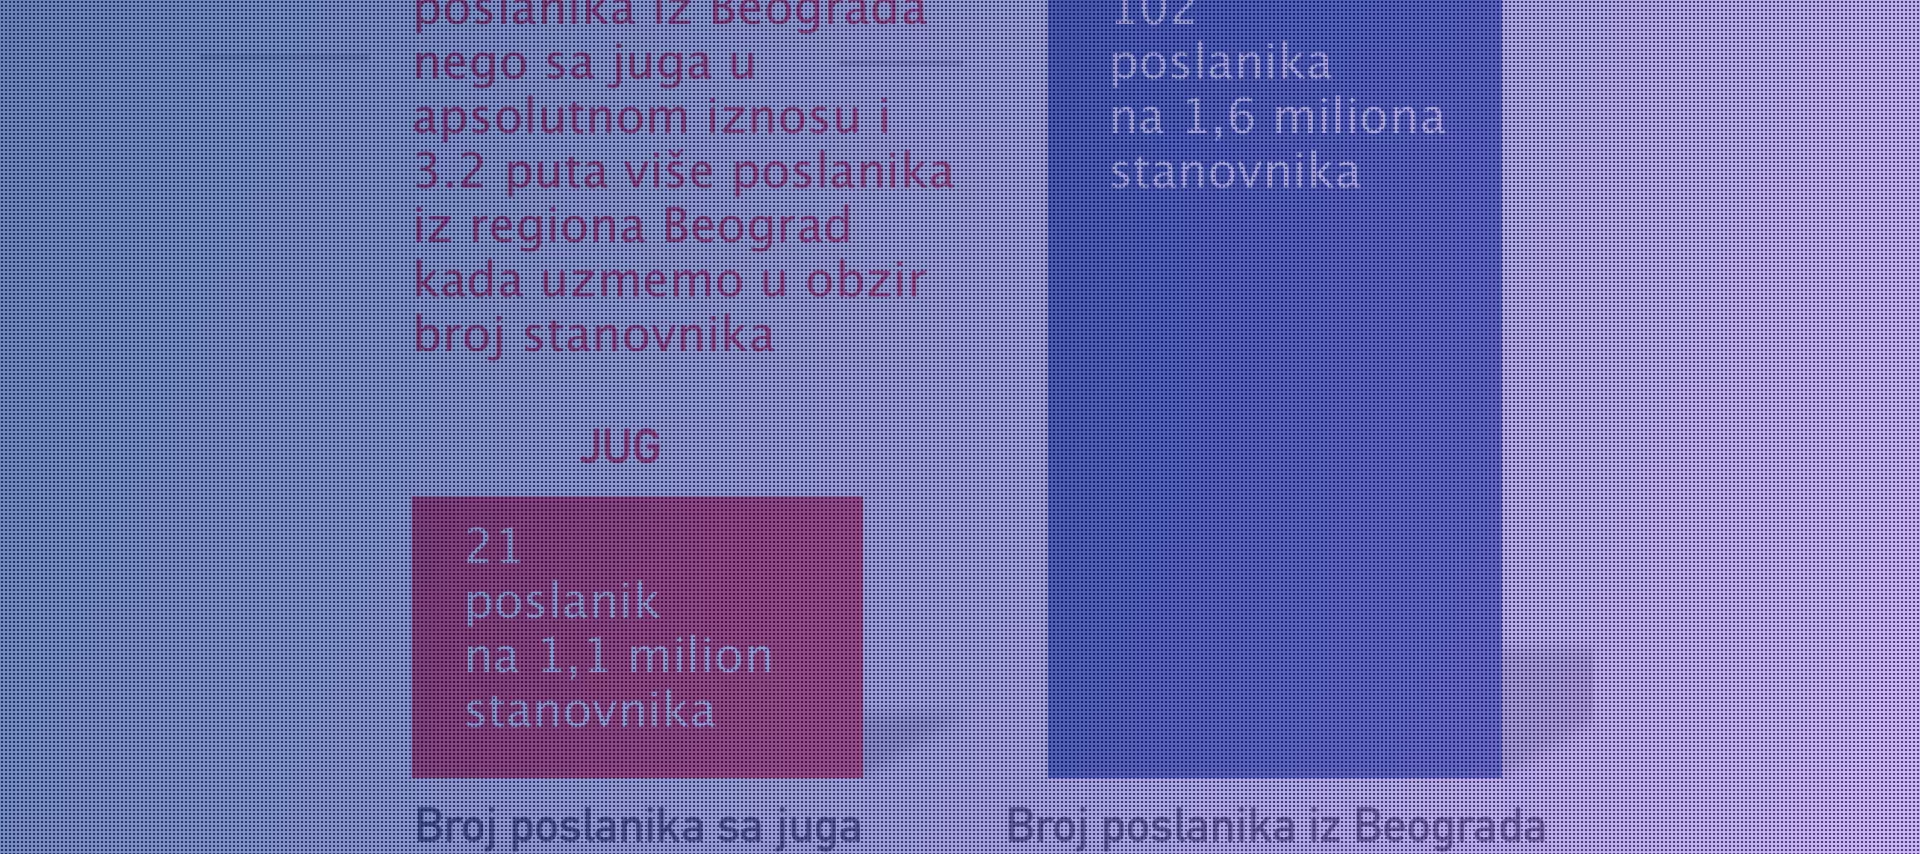 Диспропорција у броју Народних посланика на штету југа Србије